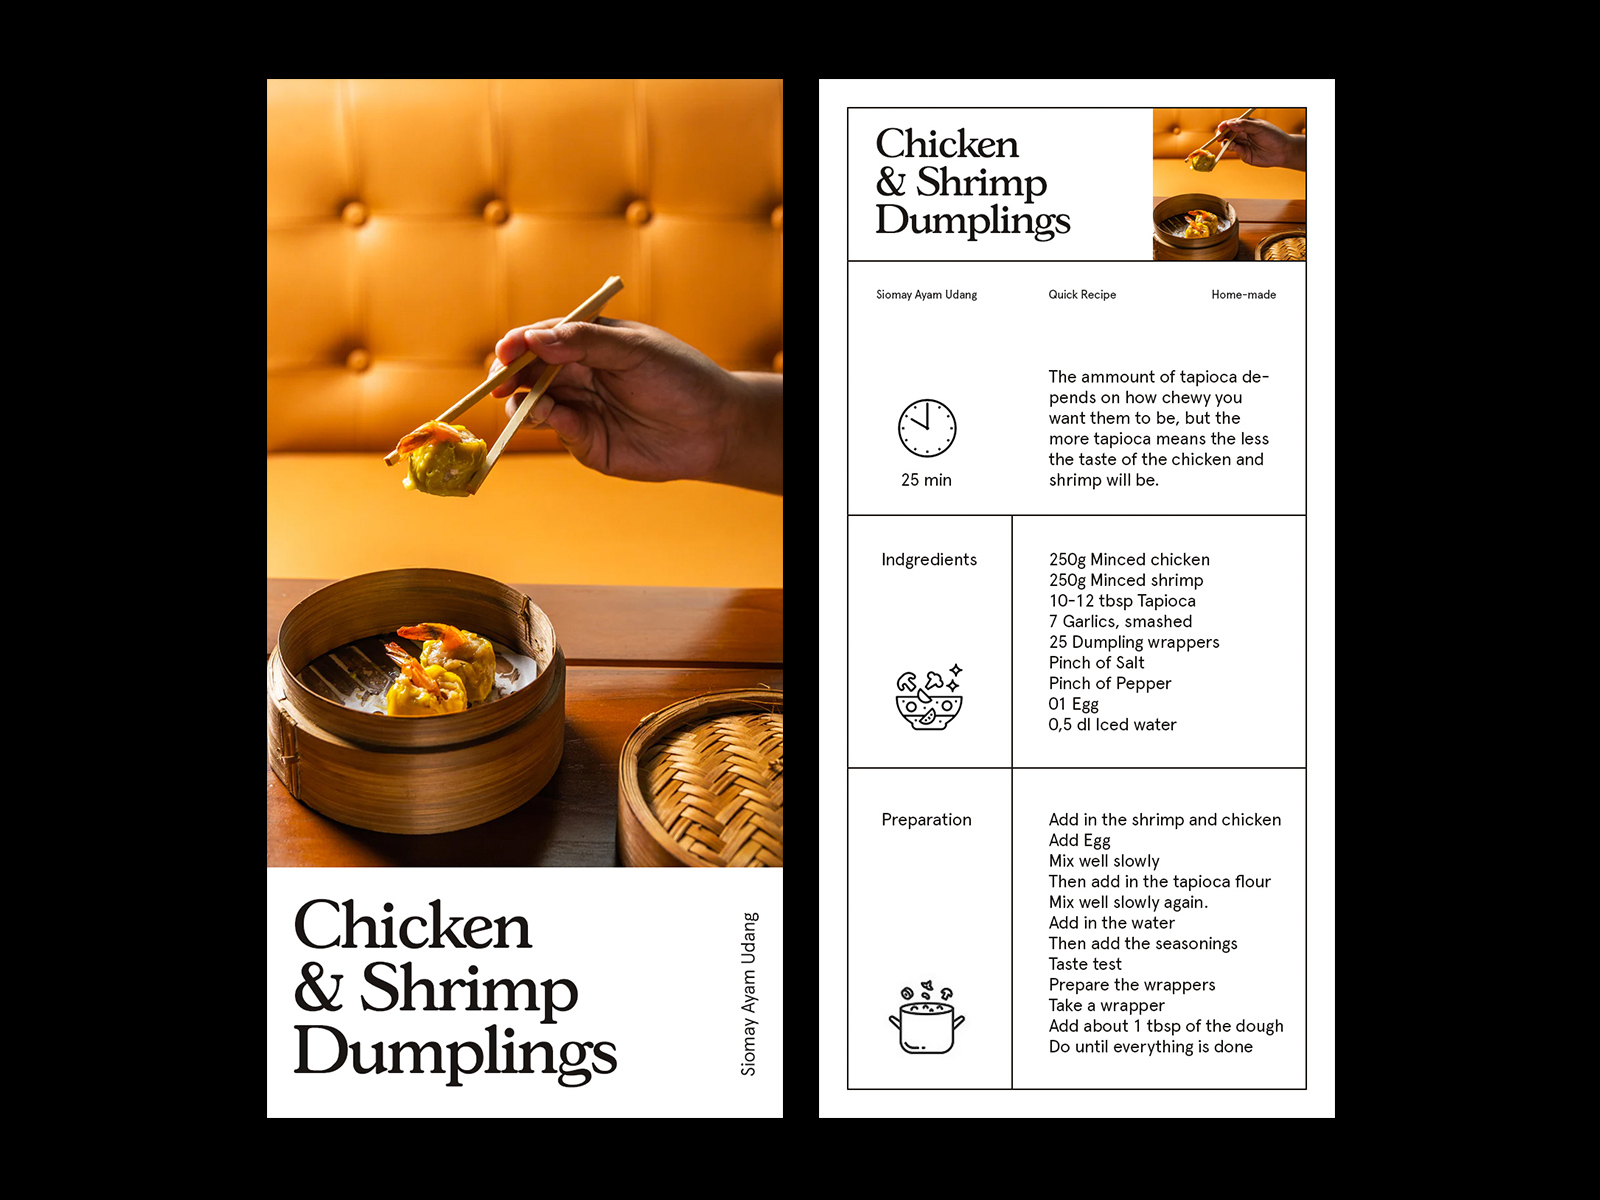 business plan for dumplings